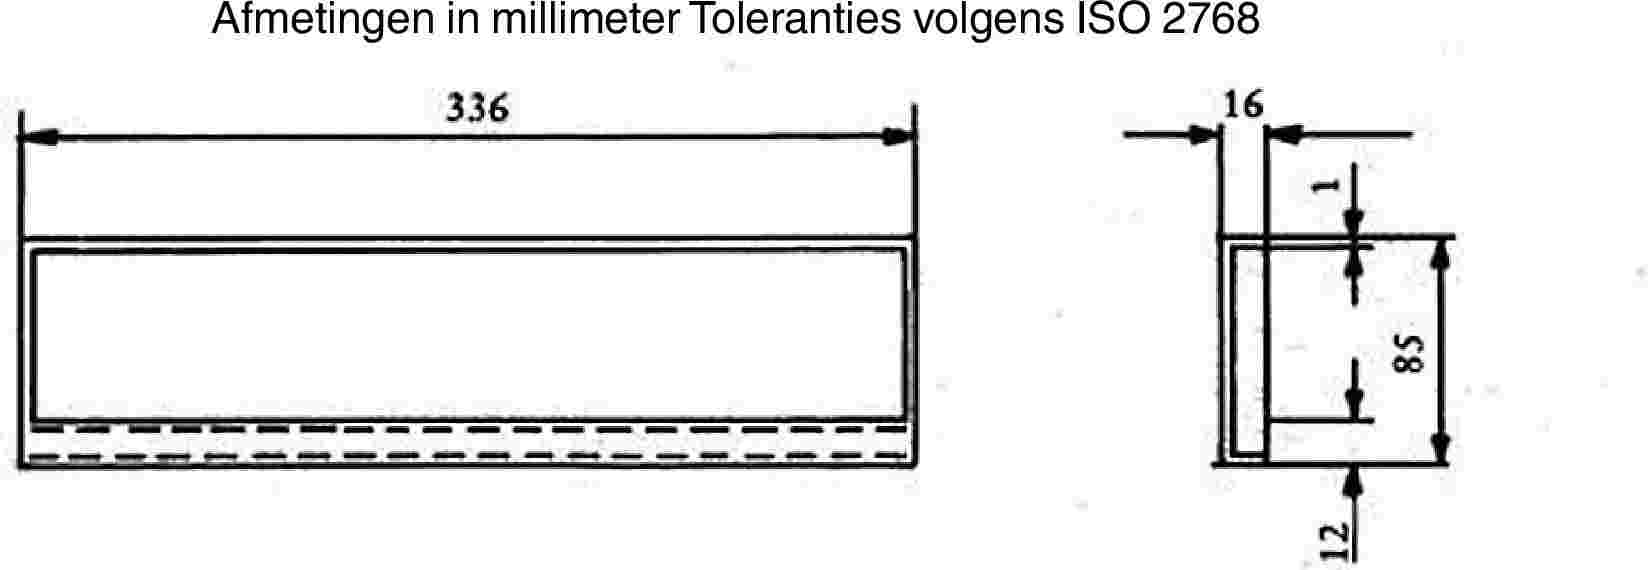 Afmetingen in millimeter Toleranties volgens ISO 2768